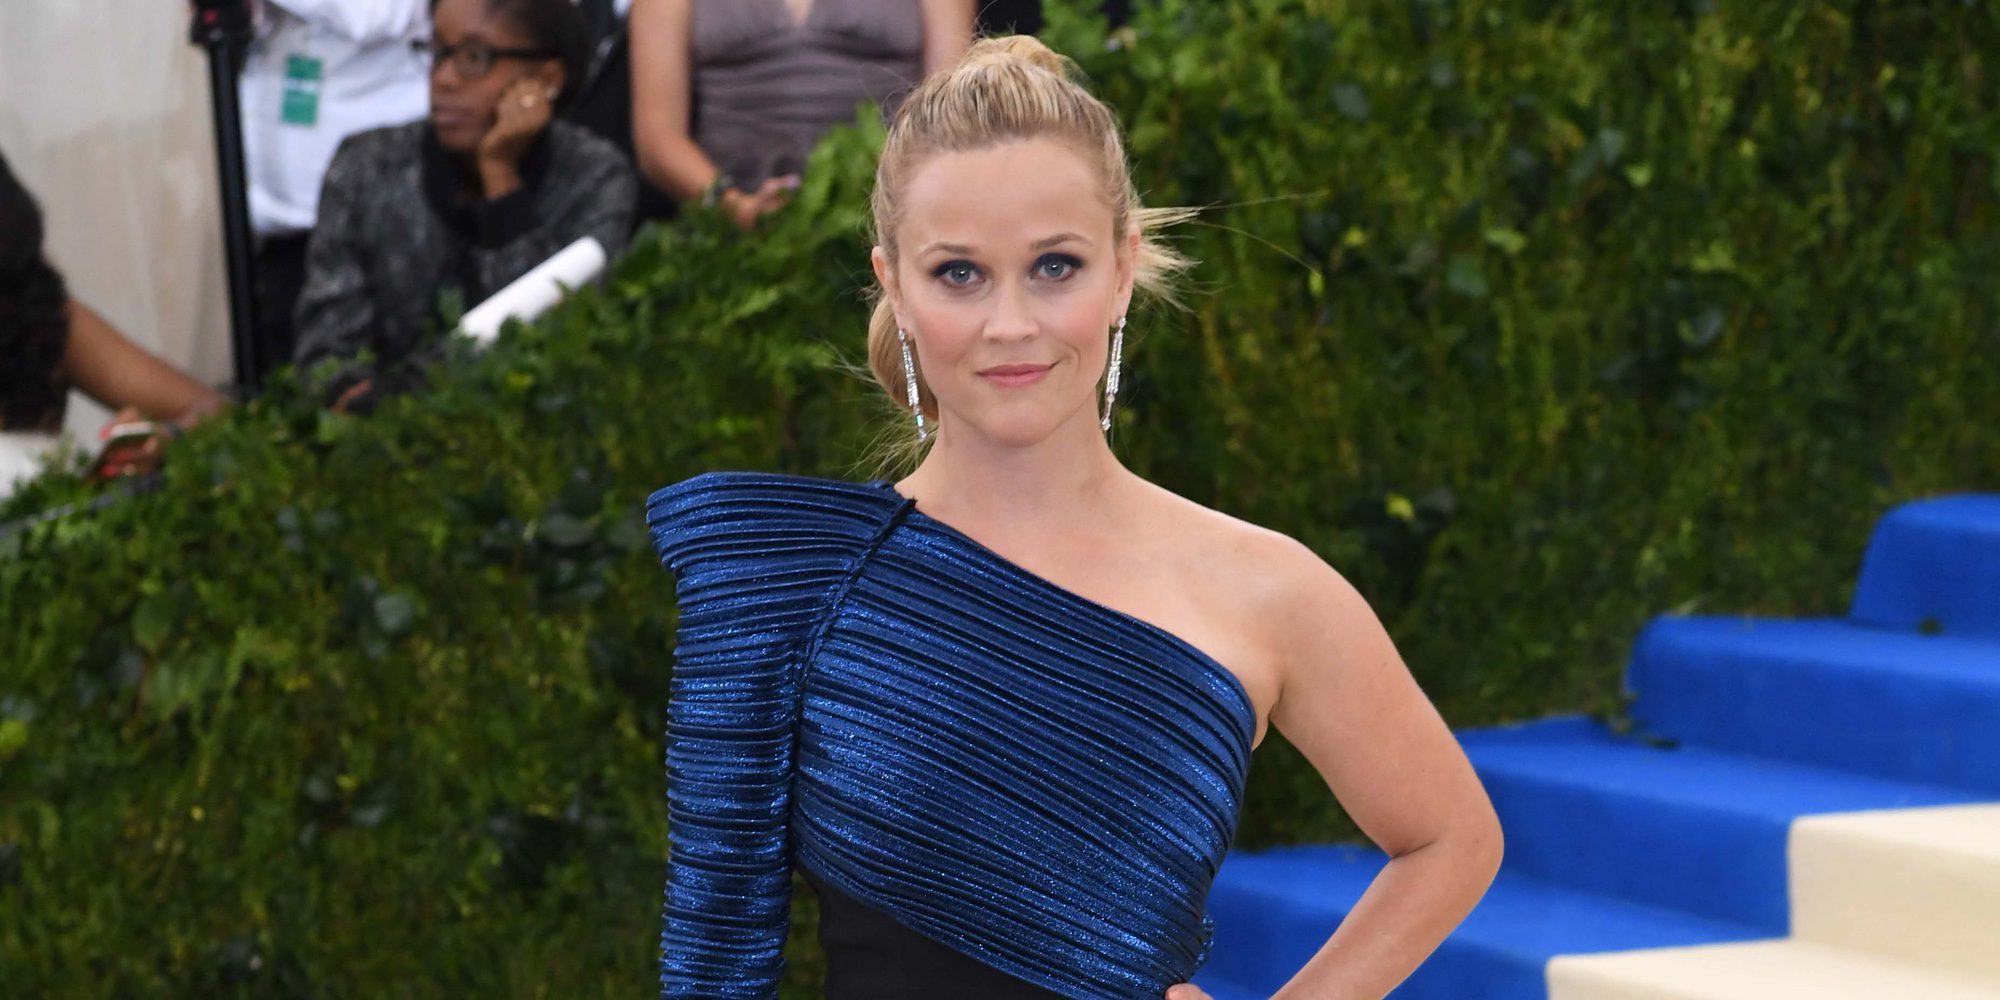 Reese Witherspoon sufrió acoso sexual de un director a los 16 años: "Siento asco hacia ese director"